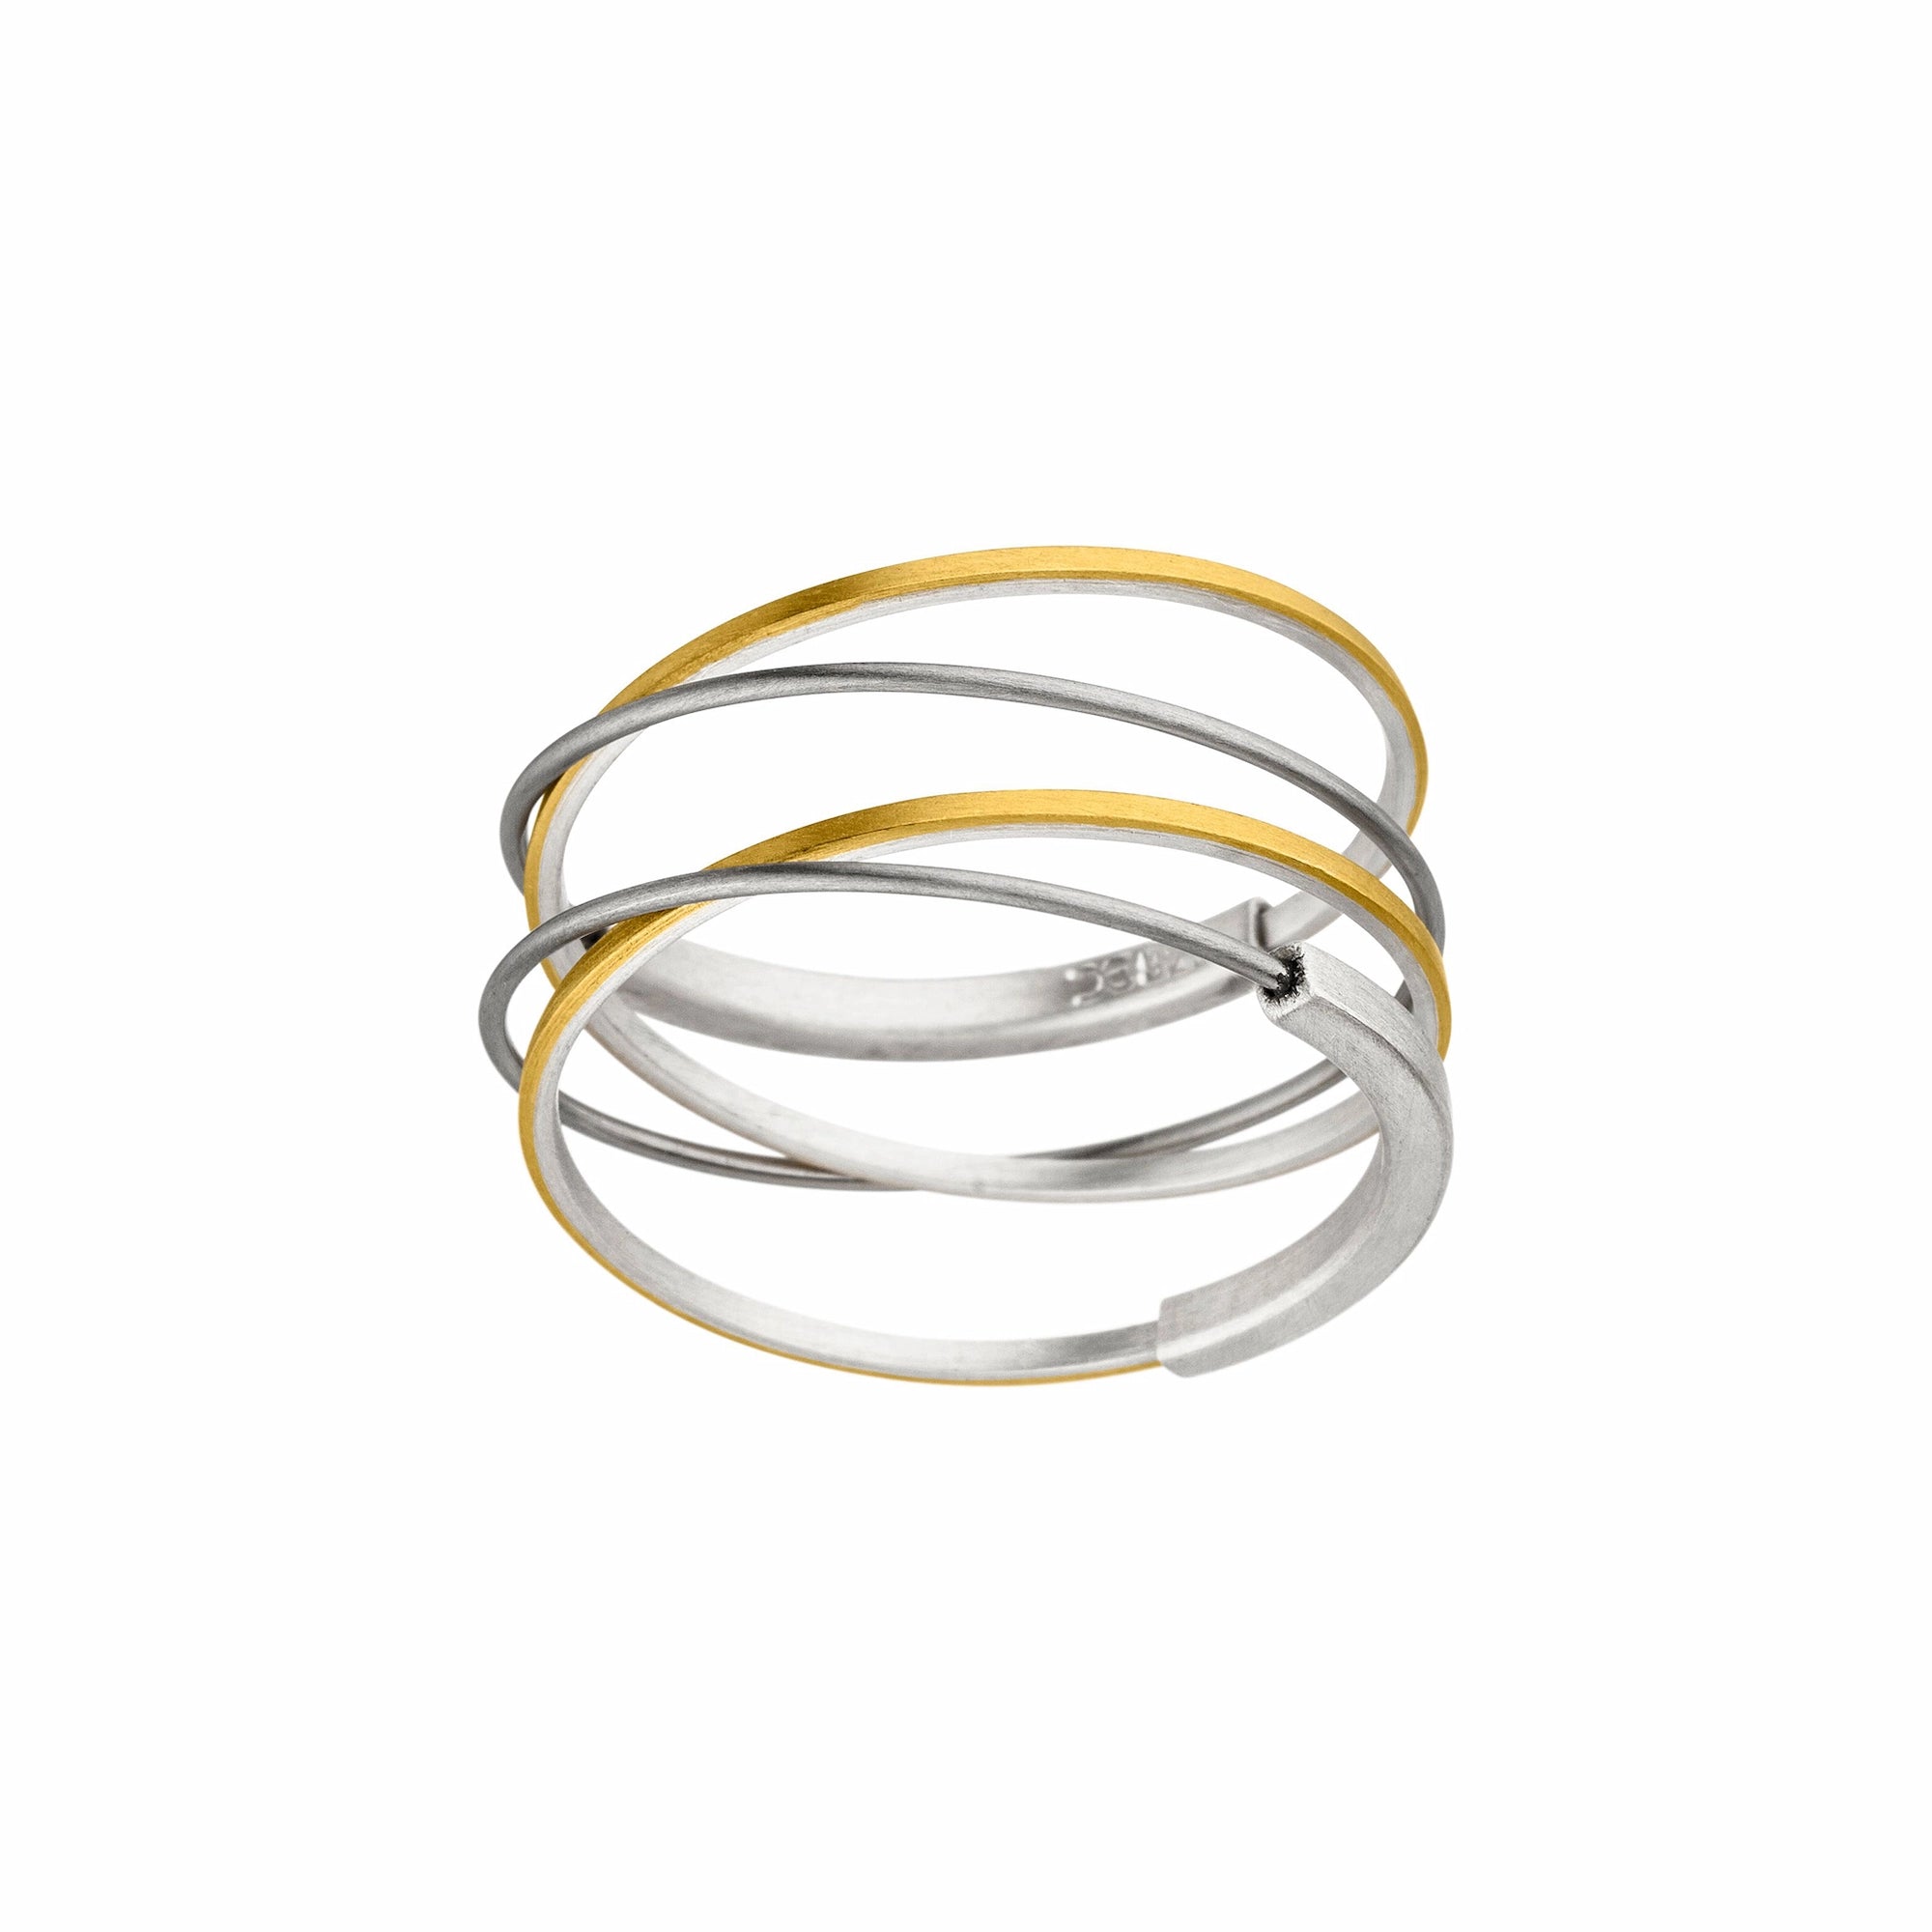 Ring aus Silber, Stahldraht und Goldauflage, der aus vier übereinander-liegenden, sich kreuzenden Stegen besteht